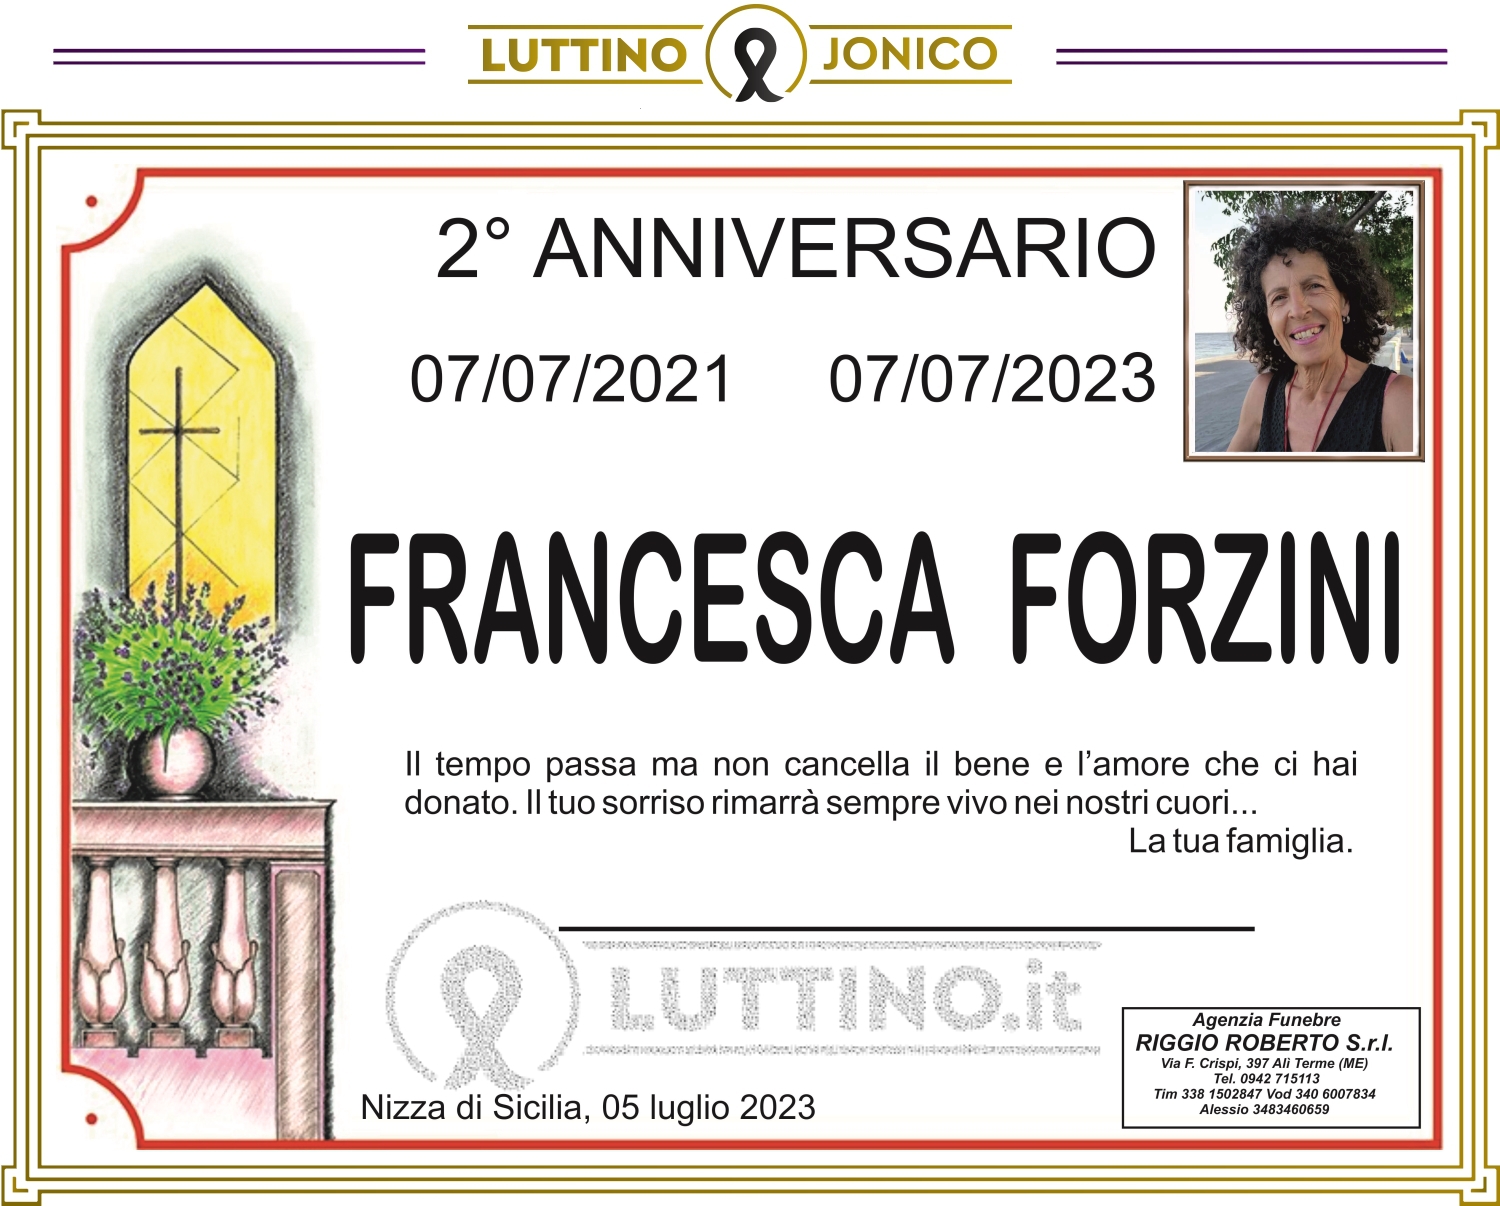 Francesca Forzini